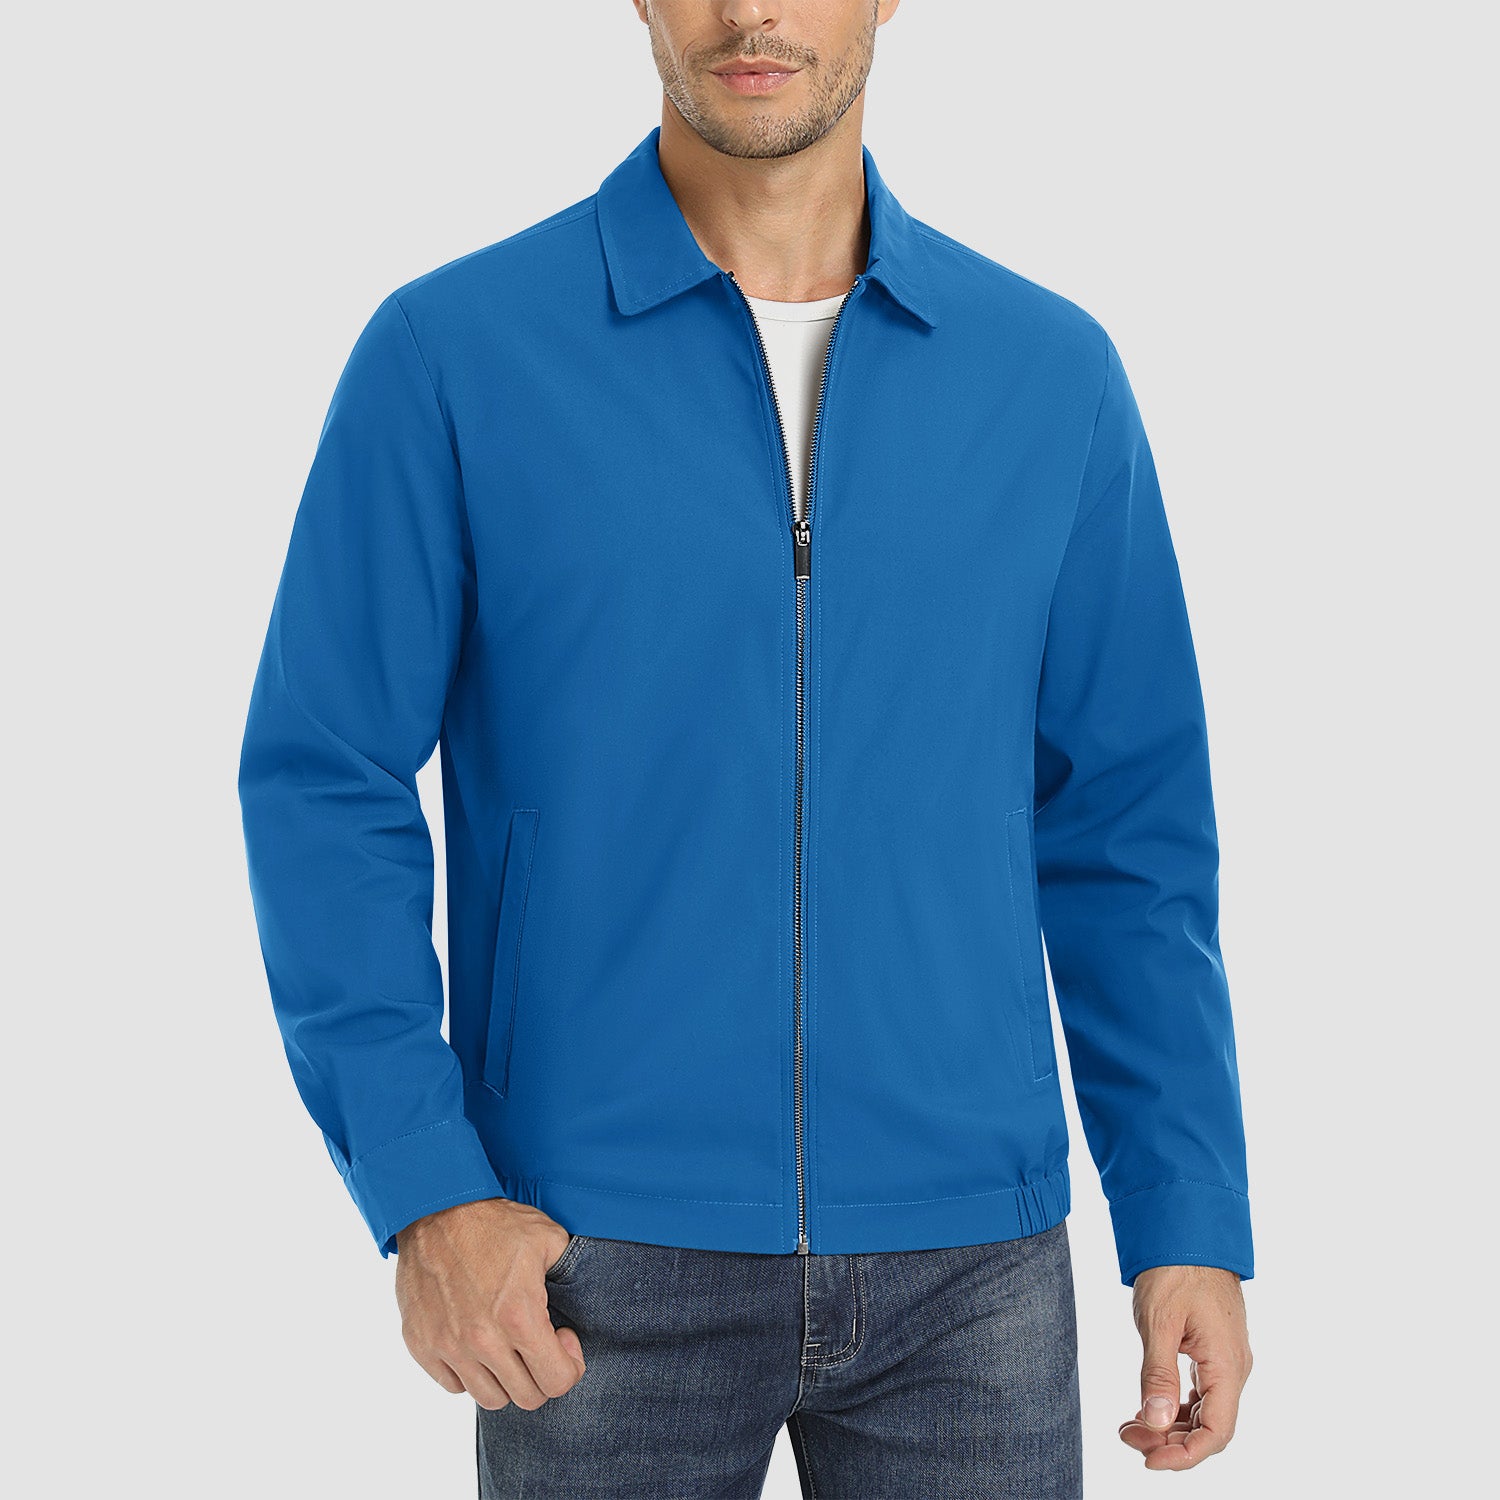 Full Sleeve Color Block Men Jacket – TRIPR